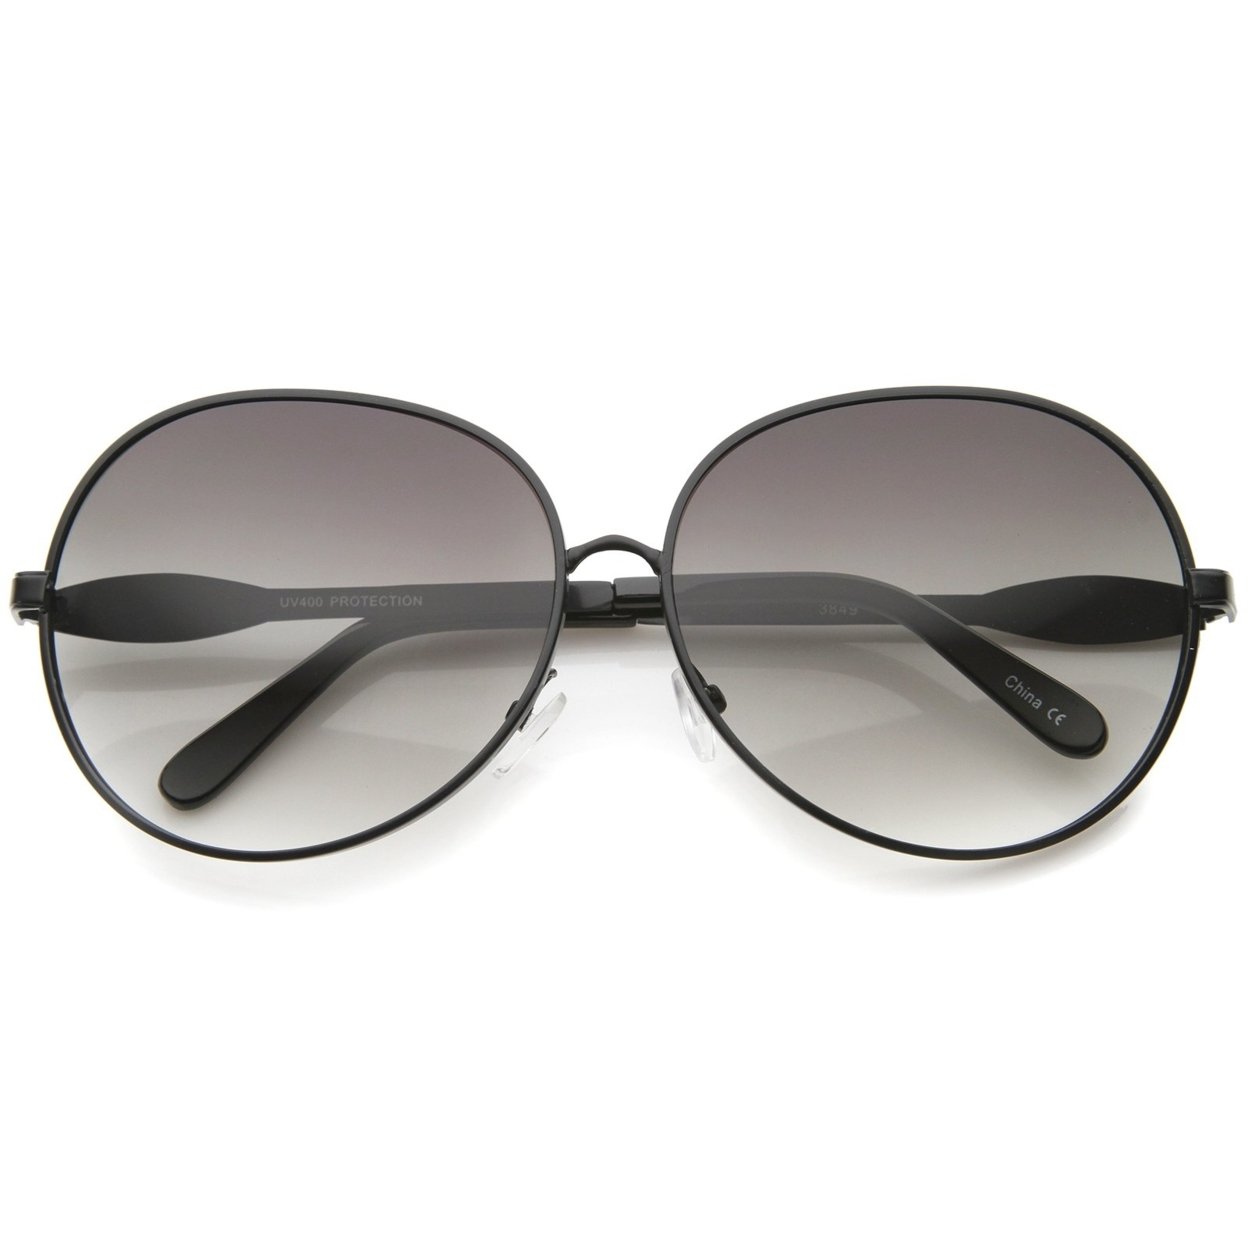 Womens Glam Full Metal Frame Oversized Round Sunglasses 63mm - Black / Lavender